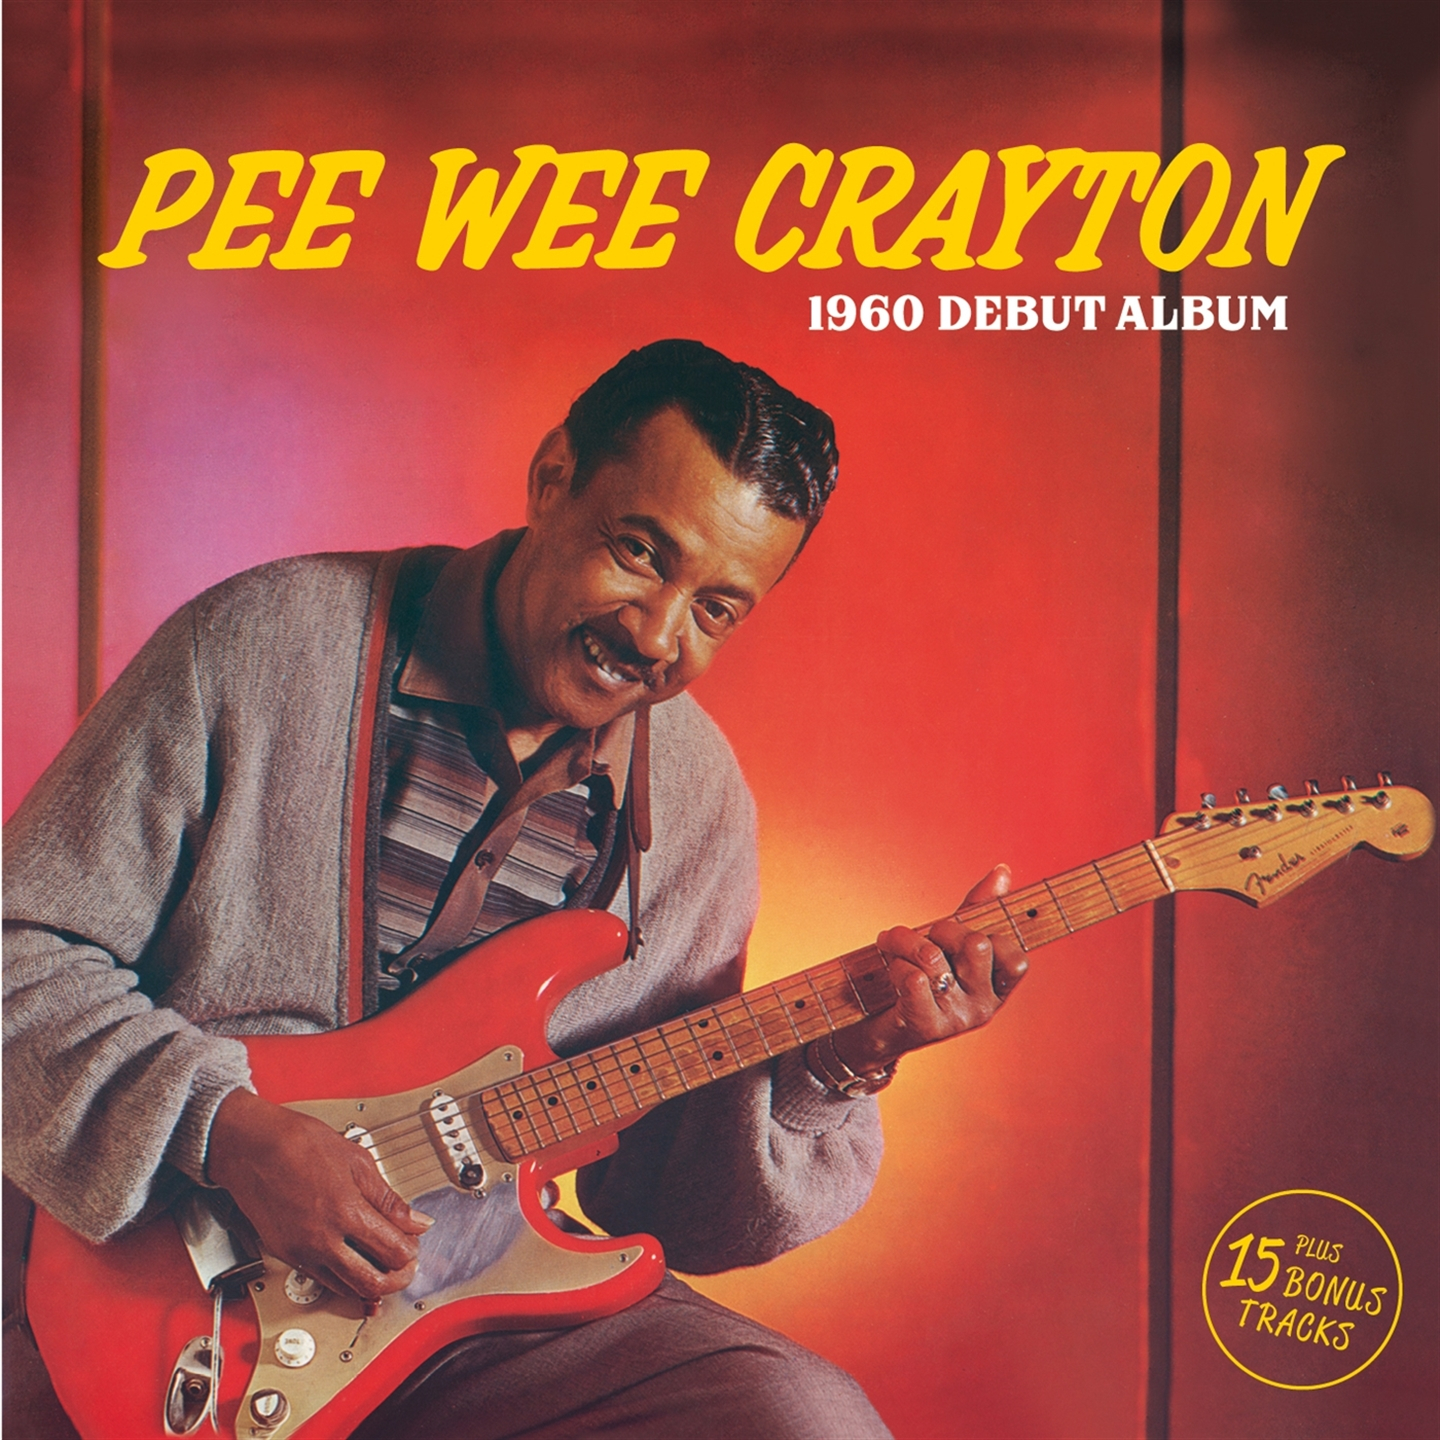 PEE WEE CRAYTON (1960 DEBUT ALBUM) + 15 BONUS TRACKS